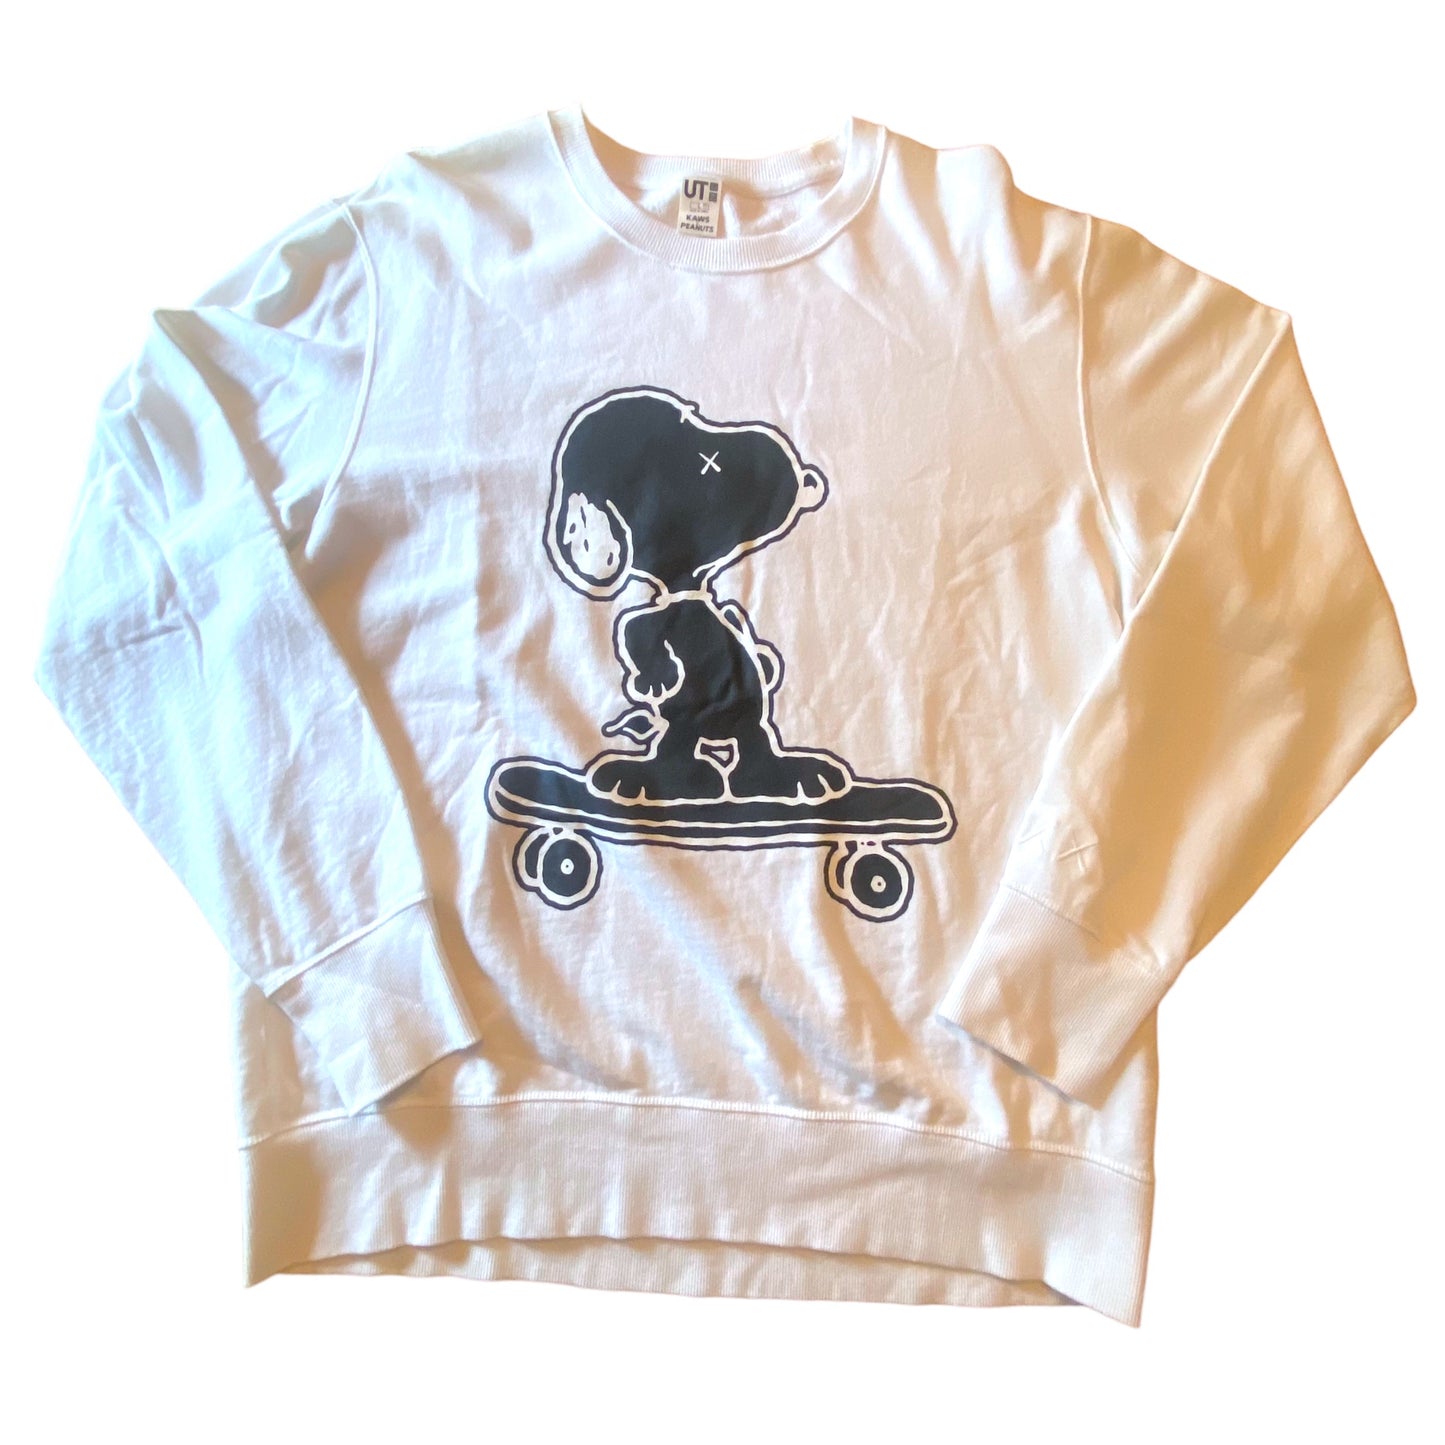 KAWS x Peanuts x Uniqlo - Skateboarding Snoooy Graphic White Crewneck Sweatshirt